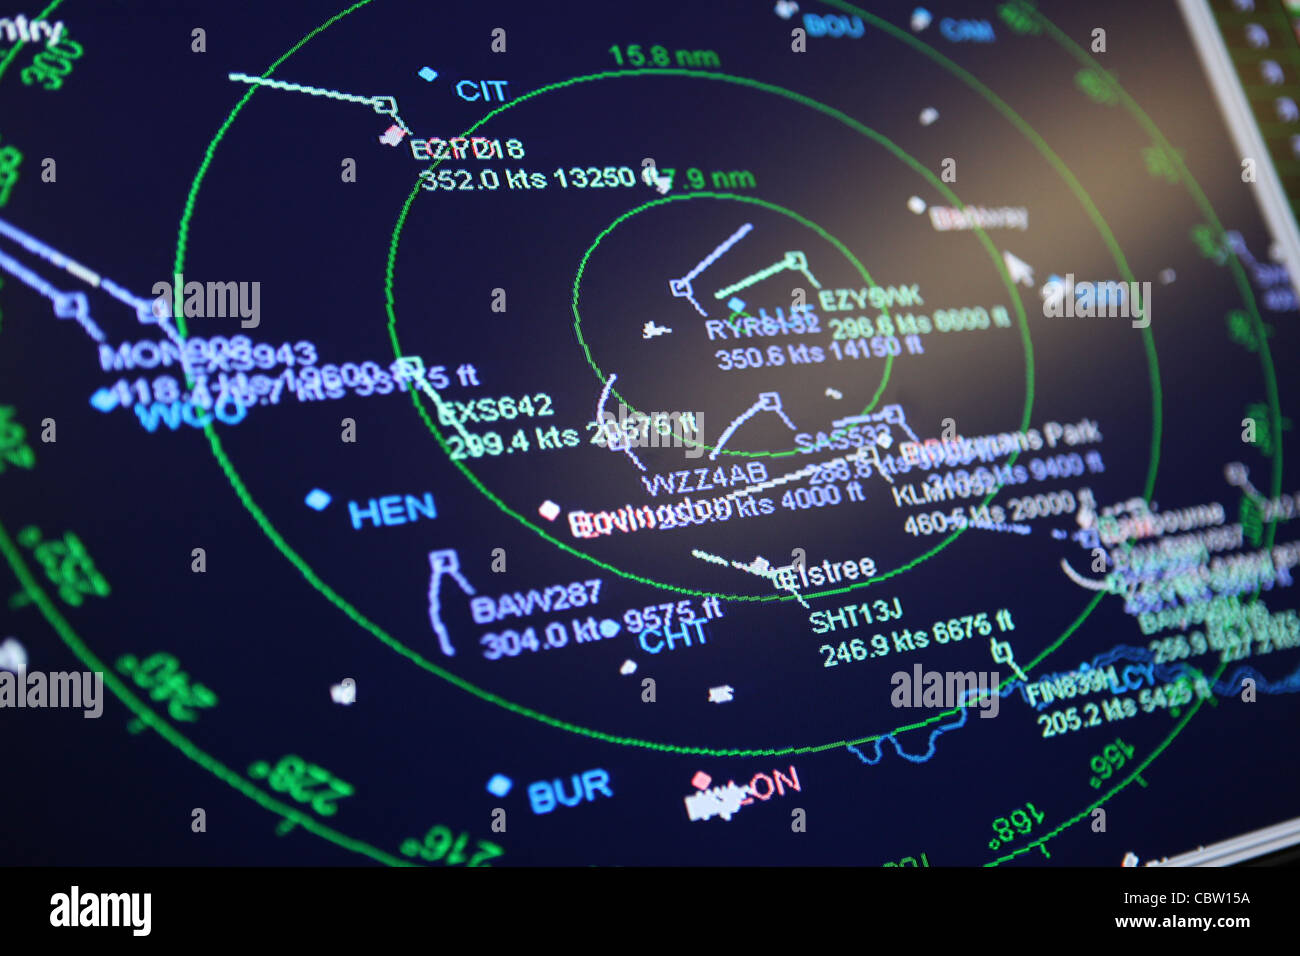 Il controllo del traffico aereo nella schermata Radar degli aerei sopra l'aeroporto di Luton, Regno Unito Foto Stock